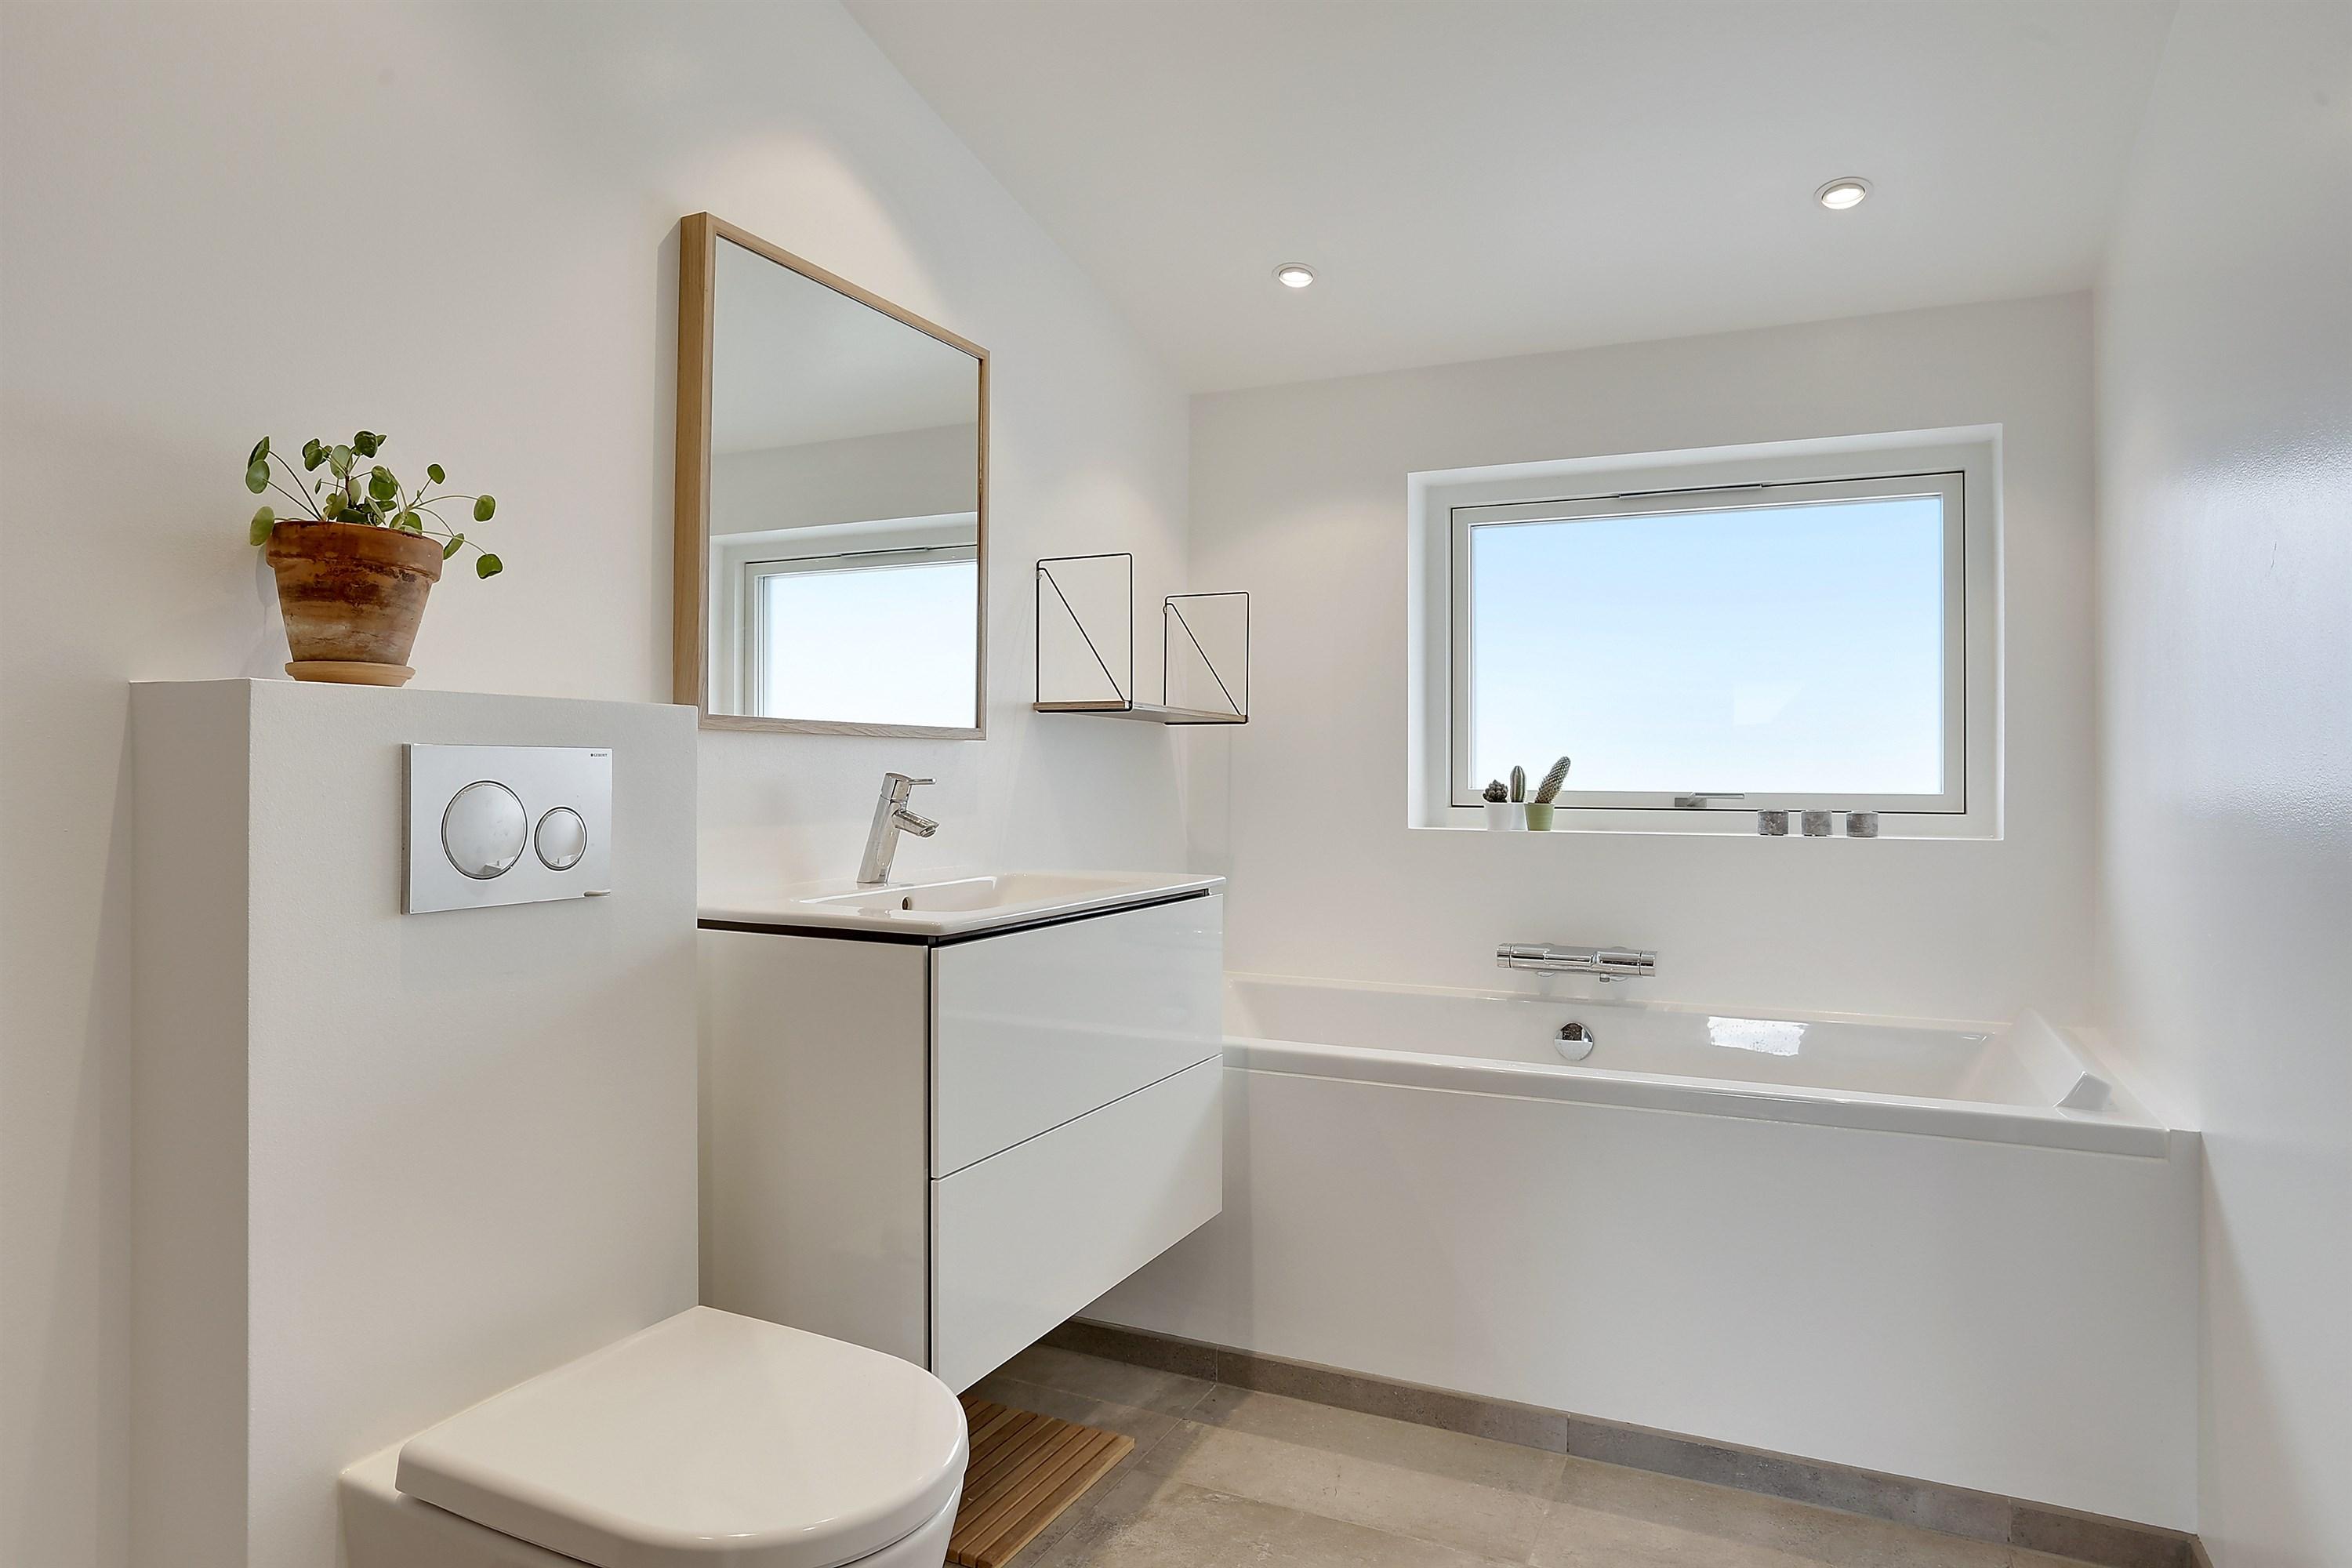 Nyt 7 m2 badeværelse med duravit badekar og grohe1 ⇒ Håndværker.dk -  Håndværker.dk